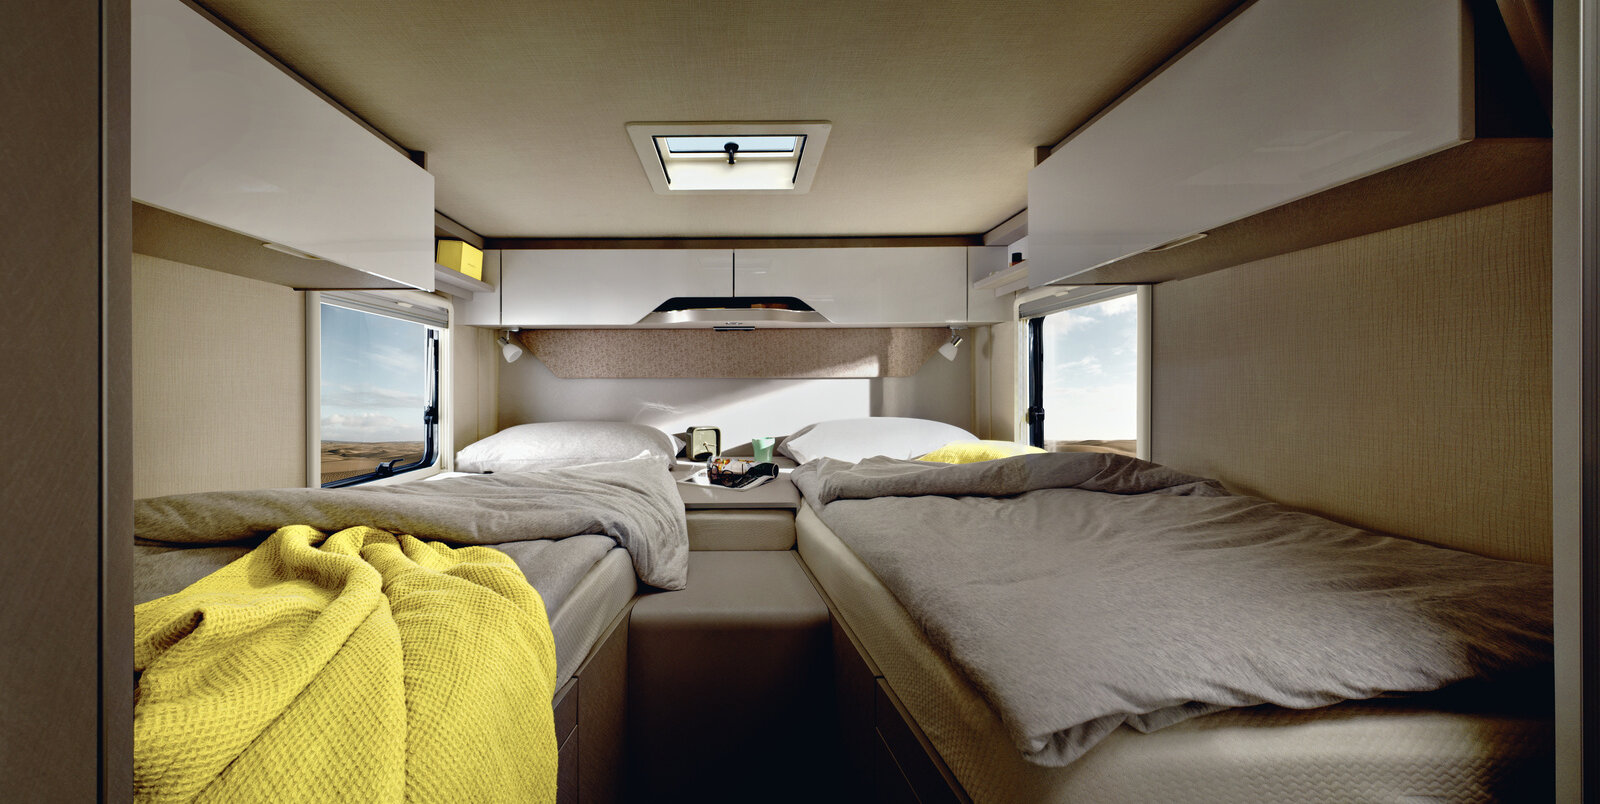 Schlafbereich im HYMER Tramp S 680: zwei bezogene Längseinzelbetten, gelbes Badetuch, mittiger Zugang, Dachstauschränke